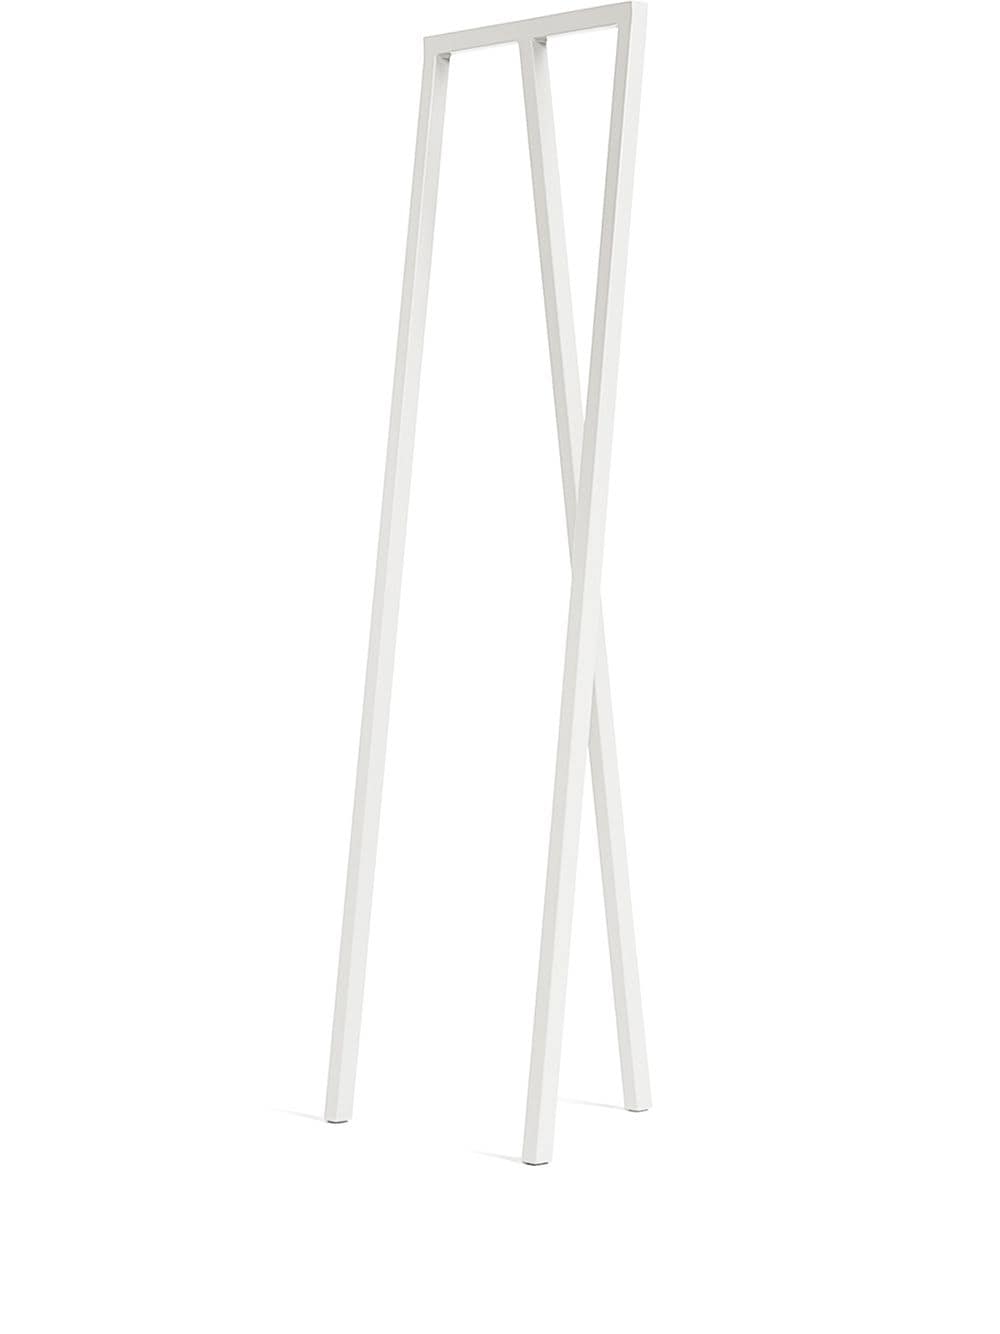 HAY Loop wardrobe stand (150cm) - White von HAY